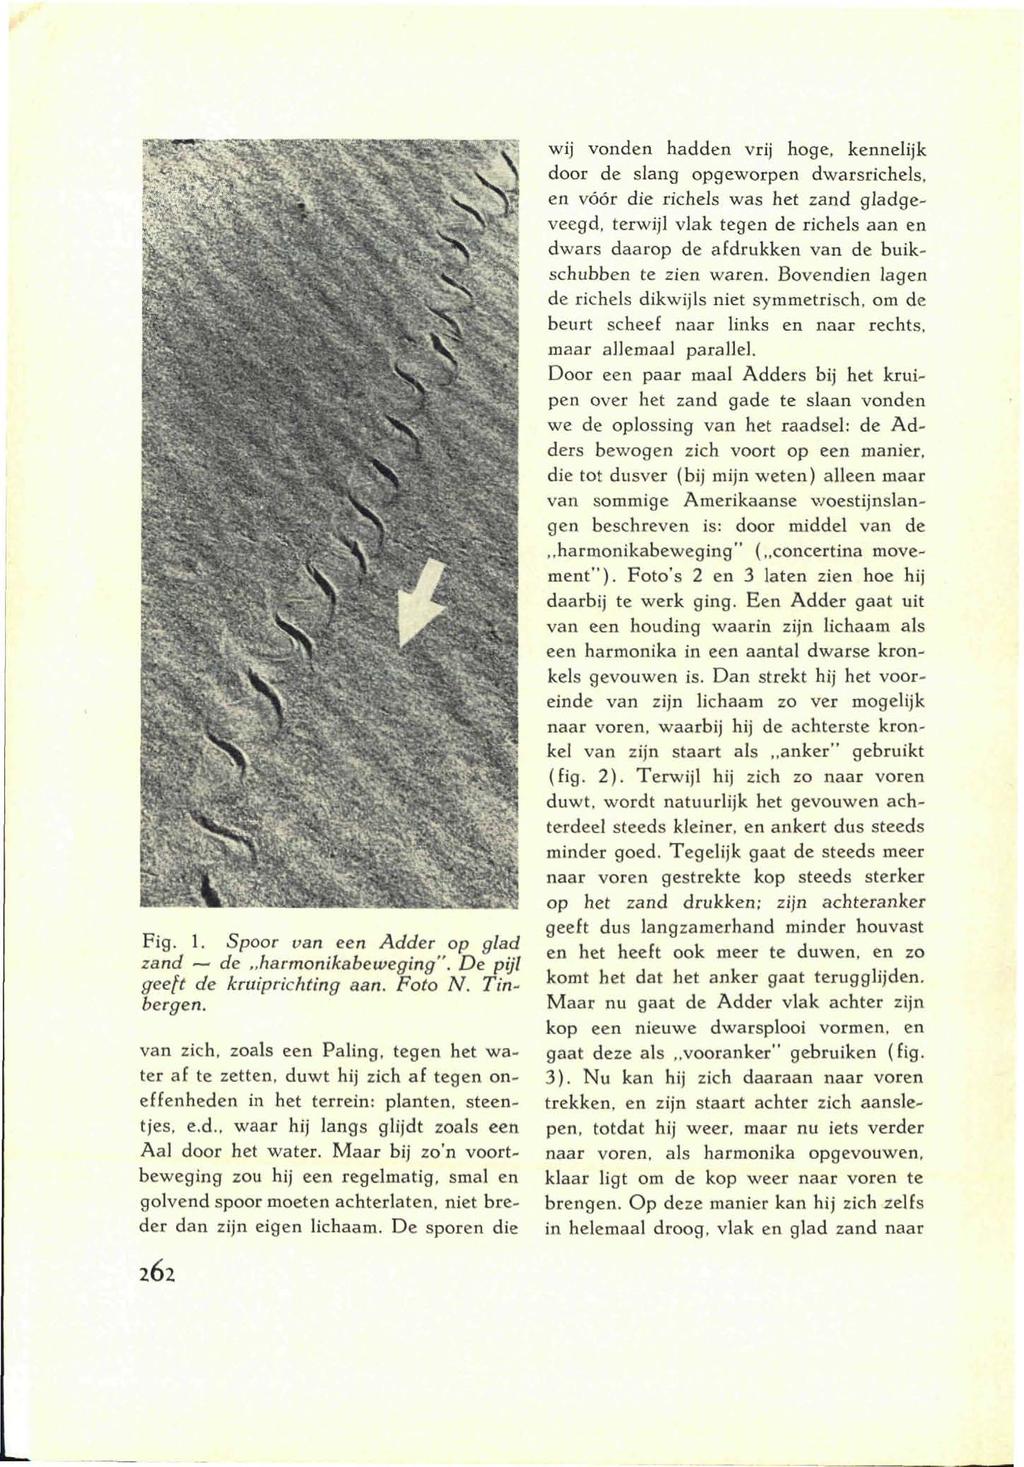 Fig. 1. Spoor van een Adder op glad zand de harmonikabeweging". De pijl geeft de kruiprichting aan. Foto N. Tinbergen.